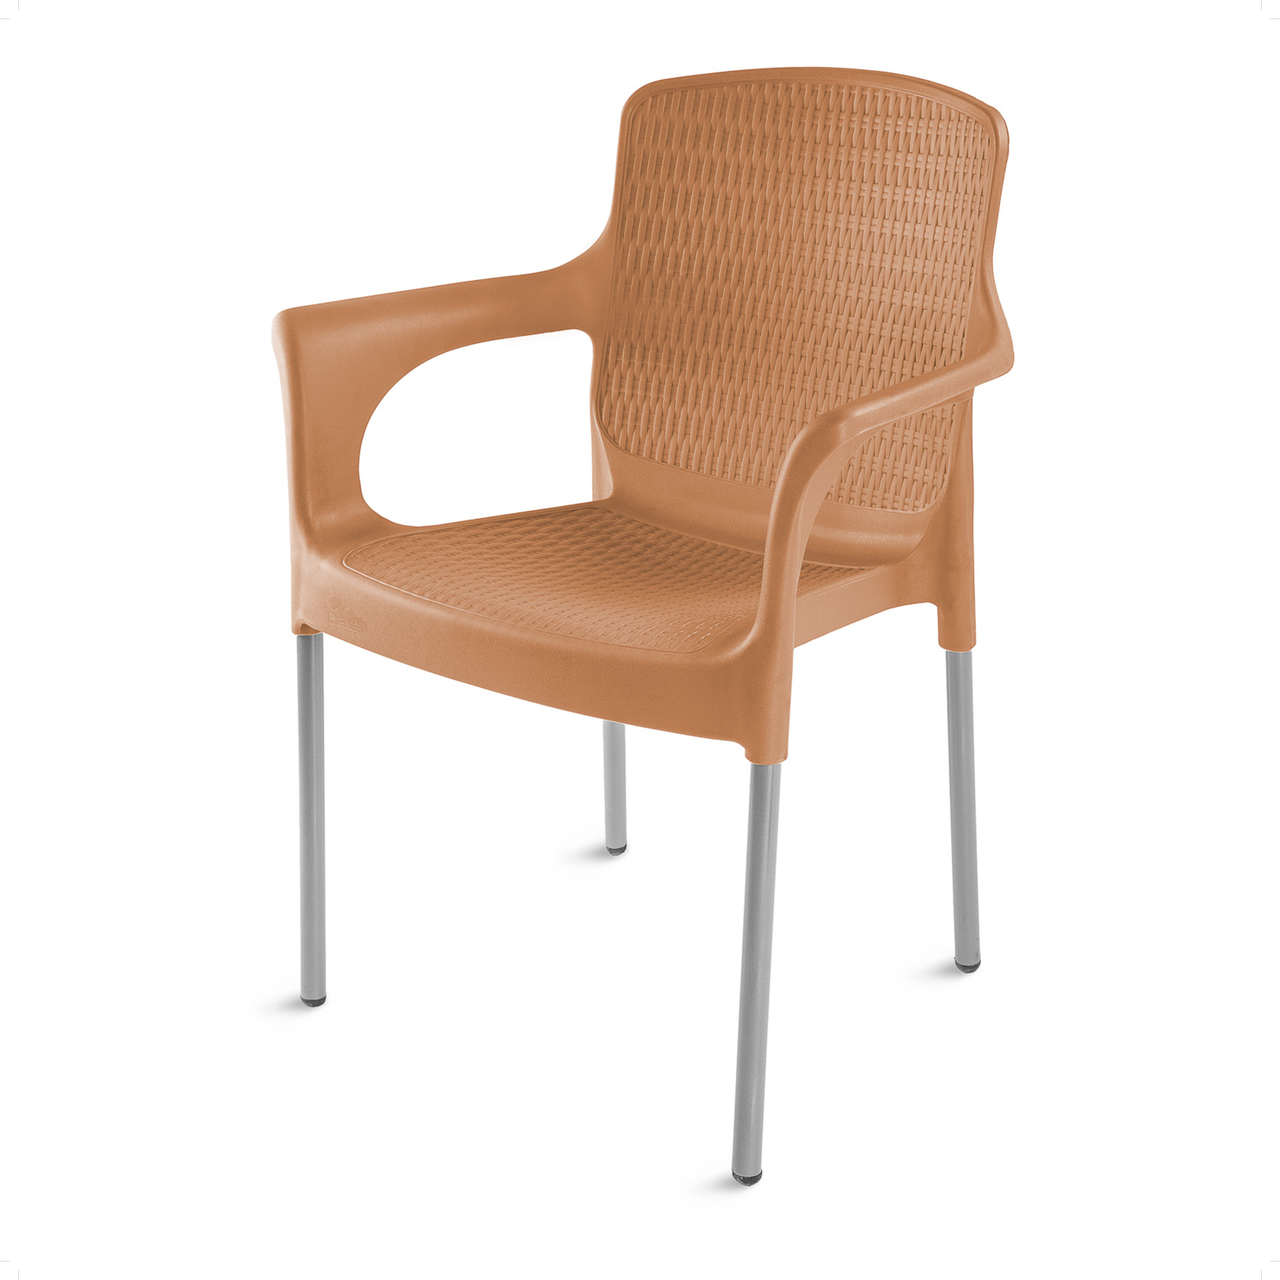 Mirage Chair